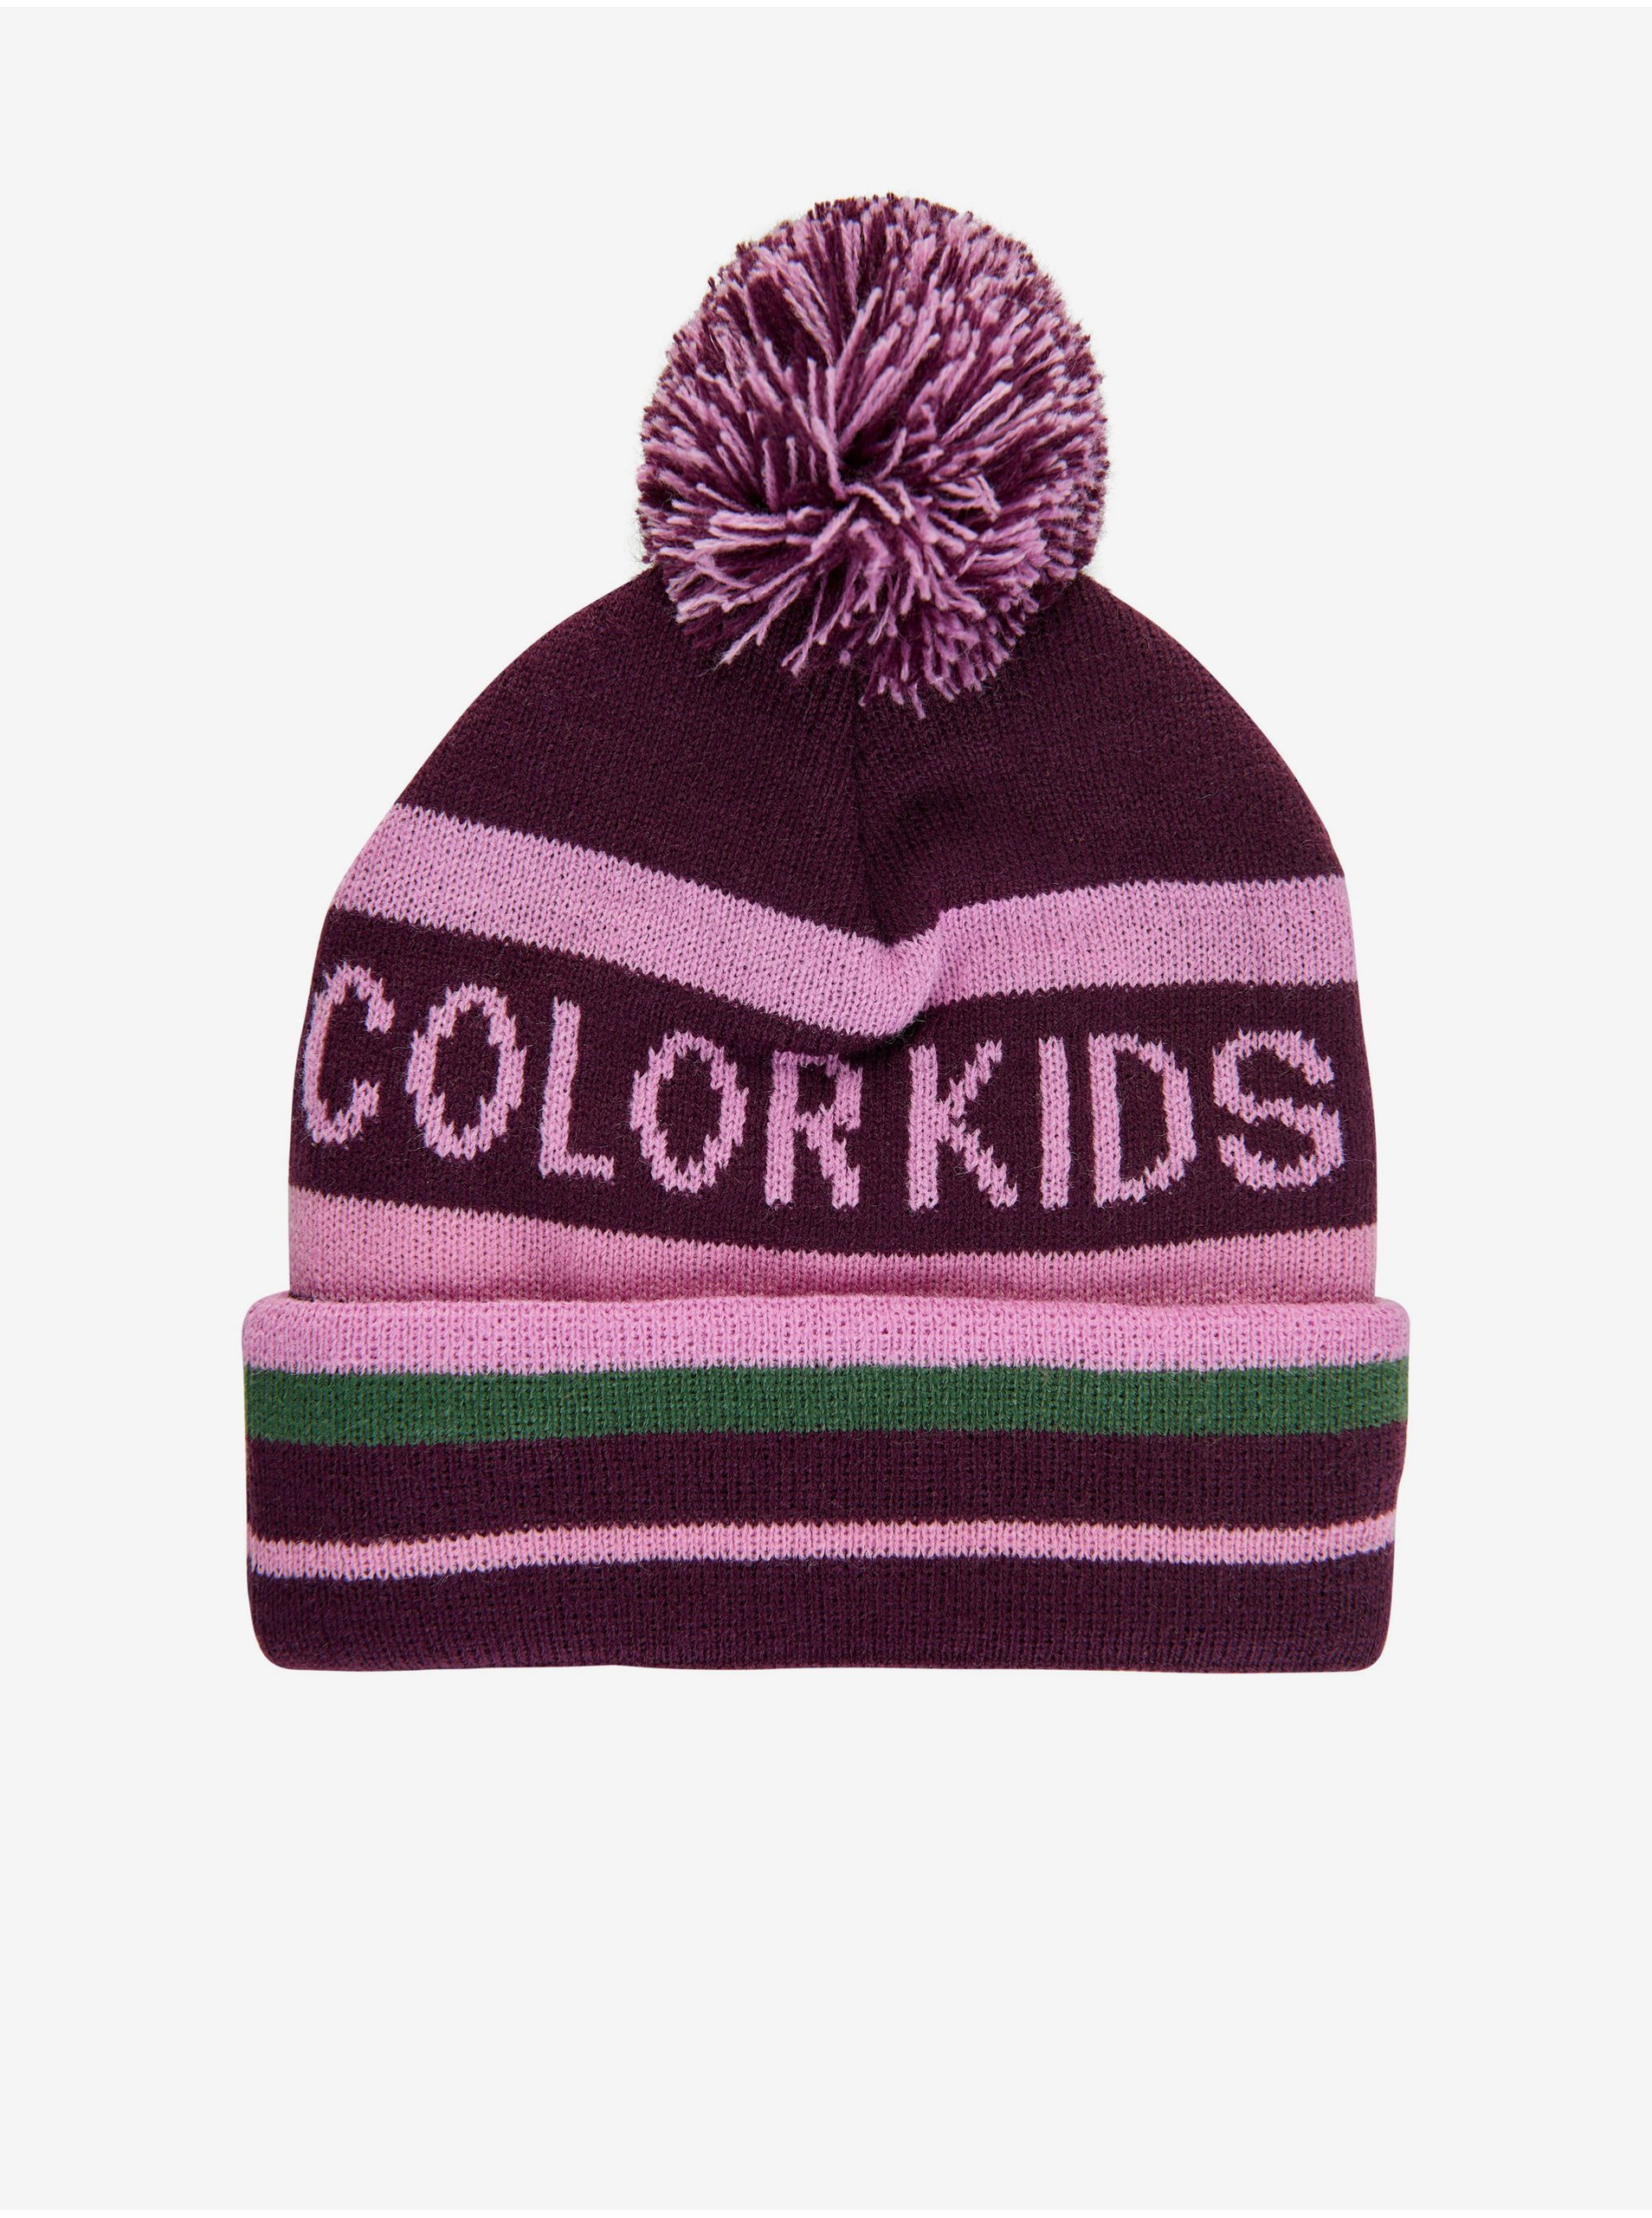 E-shop Color Kids - fialová, ružová